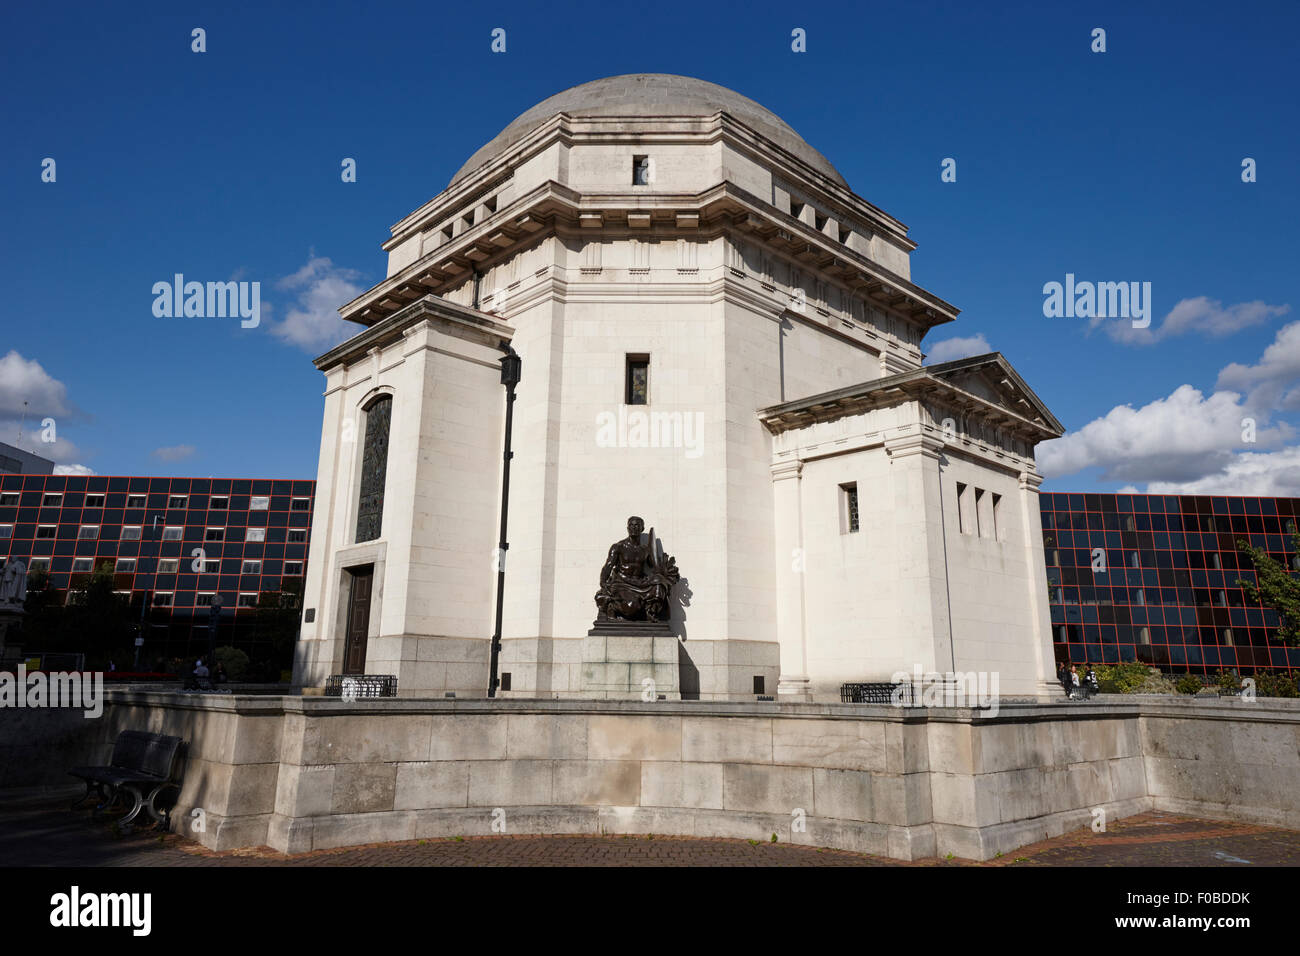 Hall de mémoire monument commémoratif de guerre centenary square Birmingham UK Banque D'Images